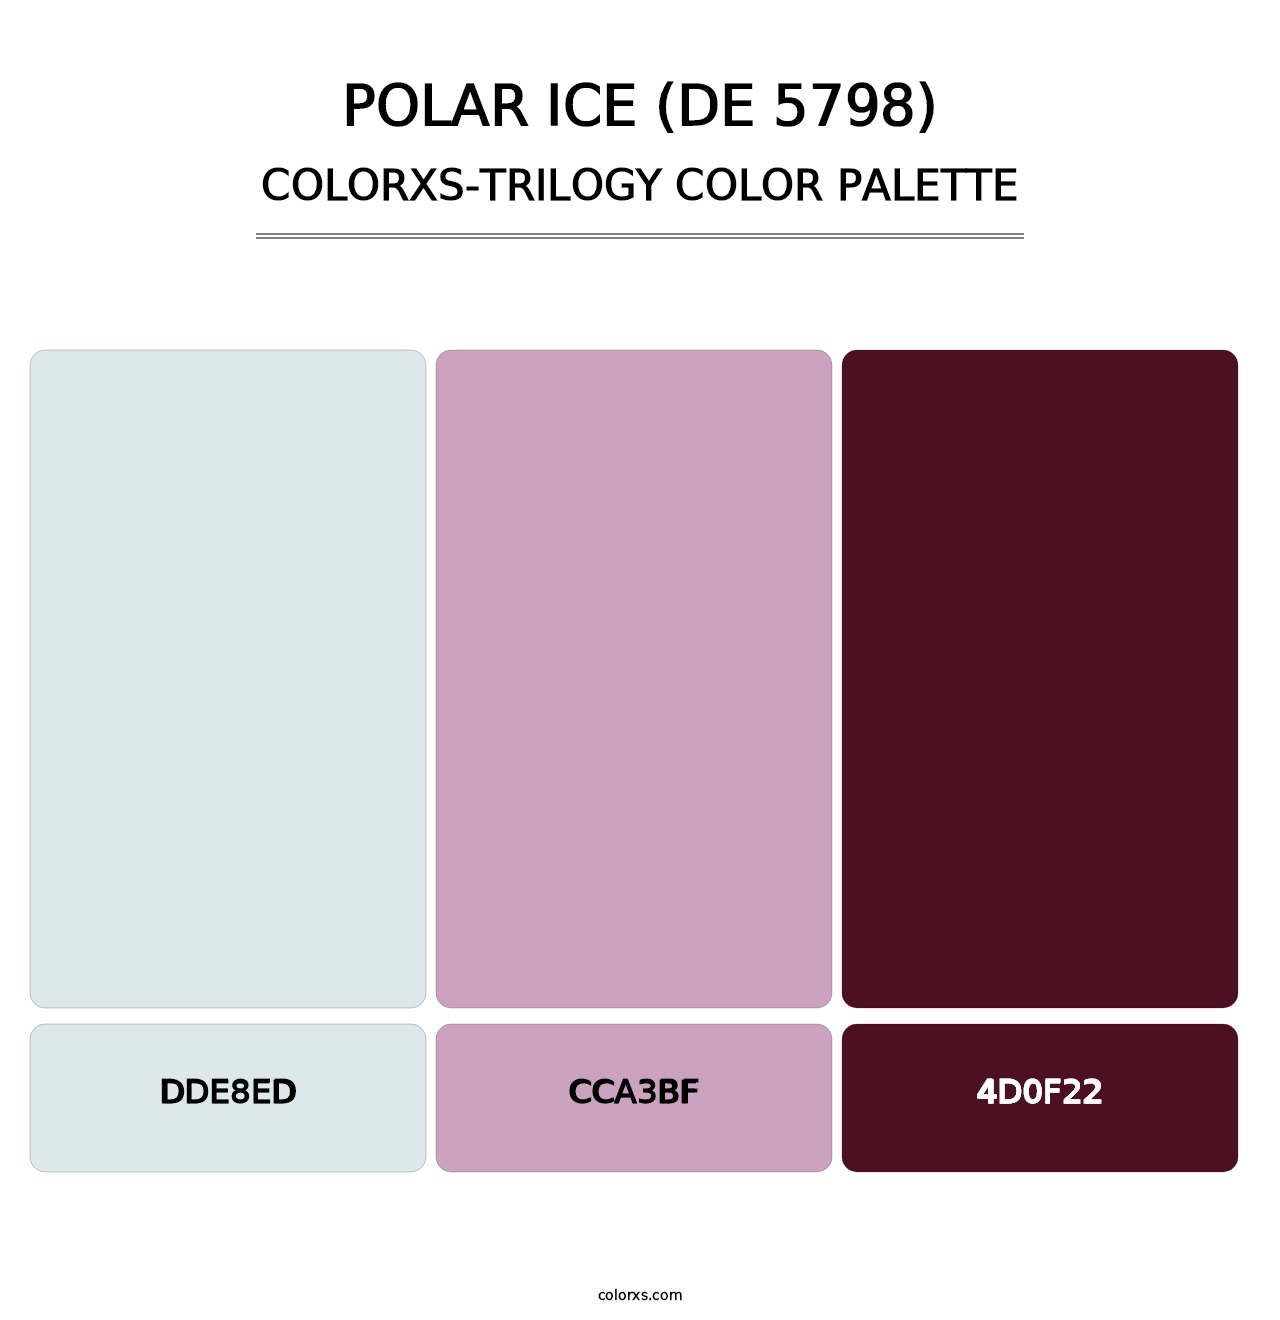 Polar Ice (DE 5798) - Colorxs Trilogy Palette